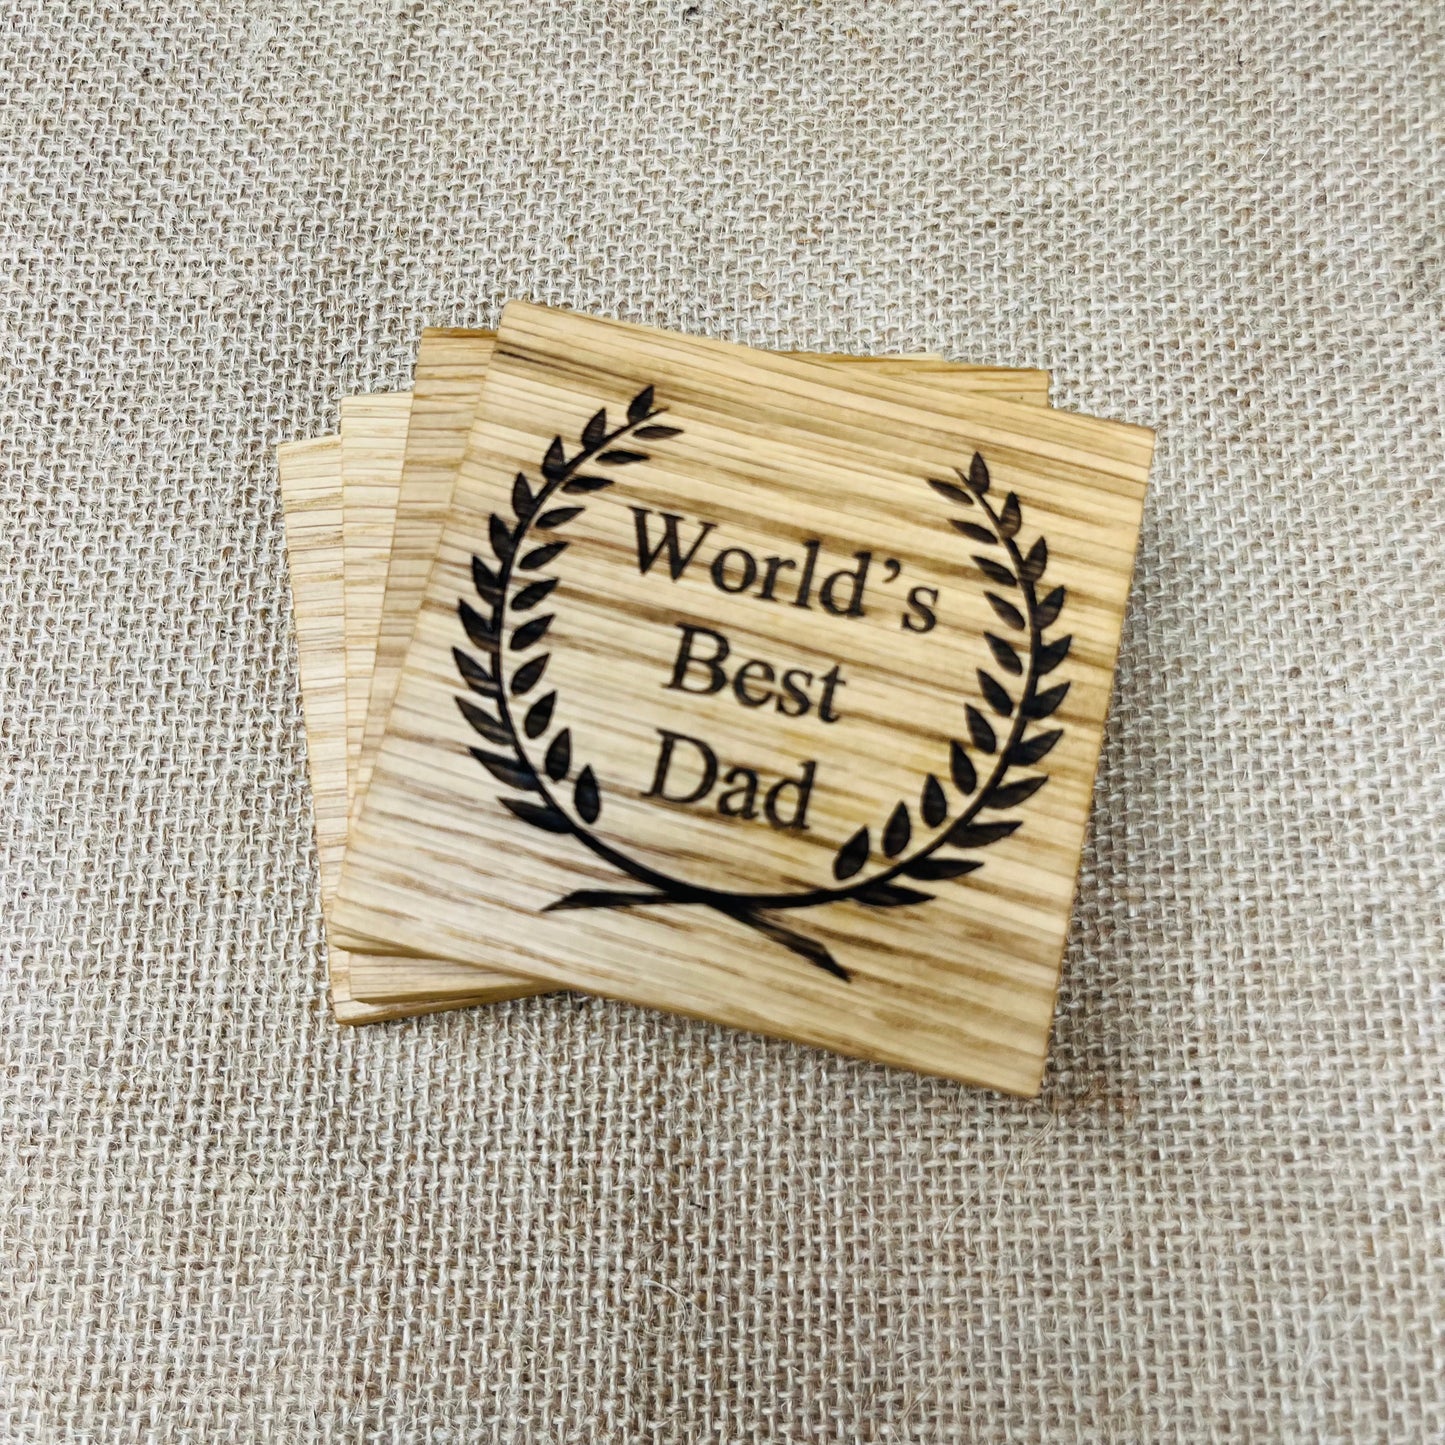 World's Best Dad Coaster - Engraved Solid Oak